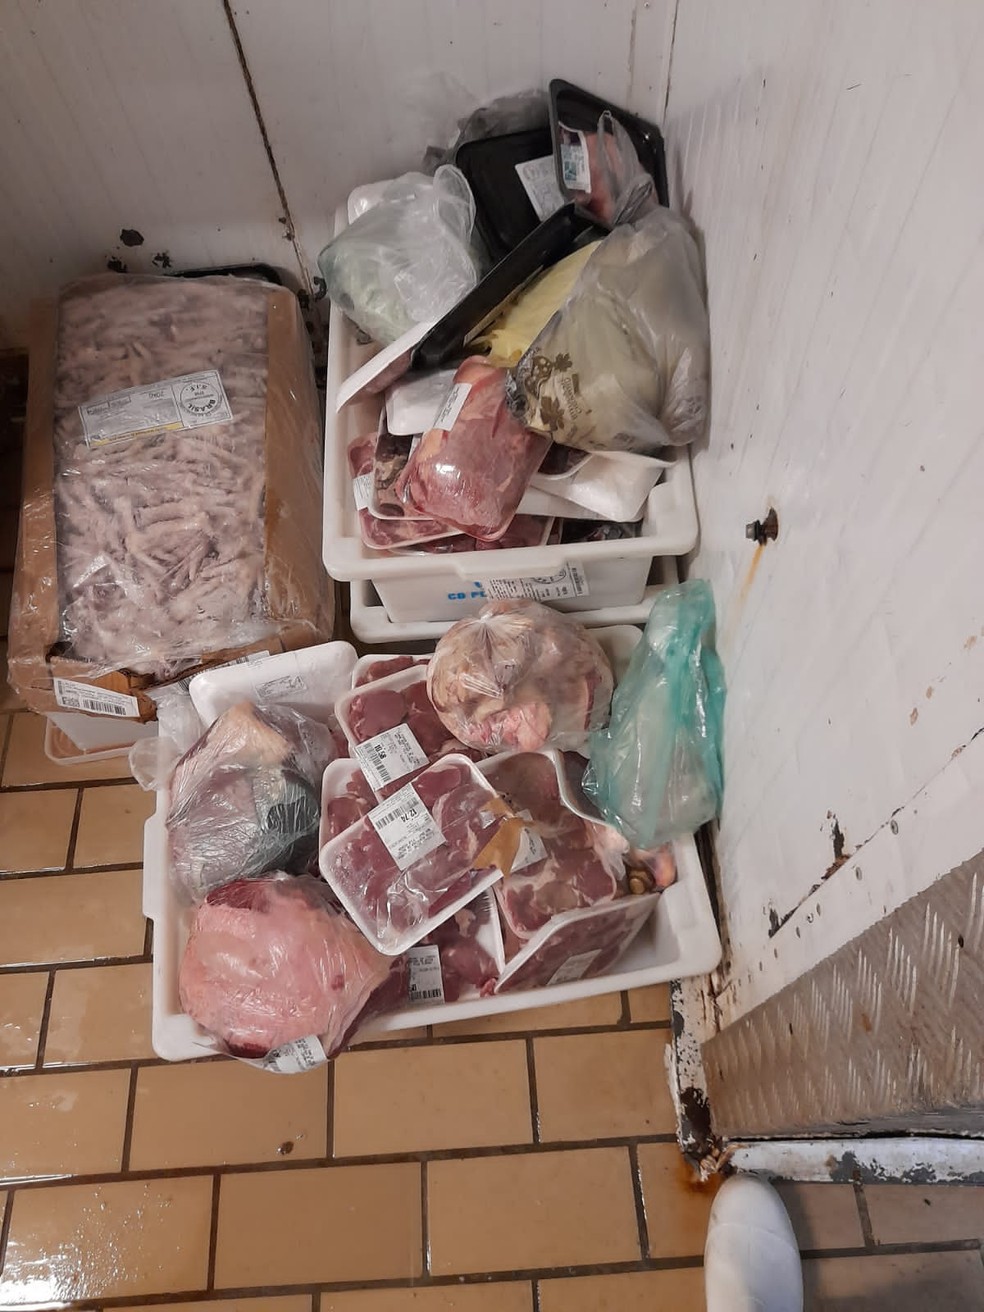 Carnes com data de validade vencidas empilhadas no chão do açougue: lavadas antes de serem recolocadas à venda — Foto: Arquivo pessoal